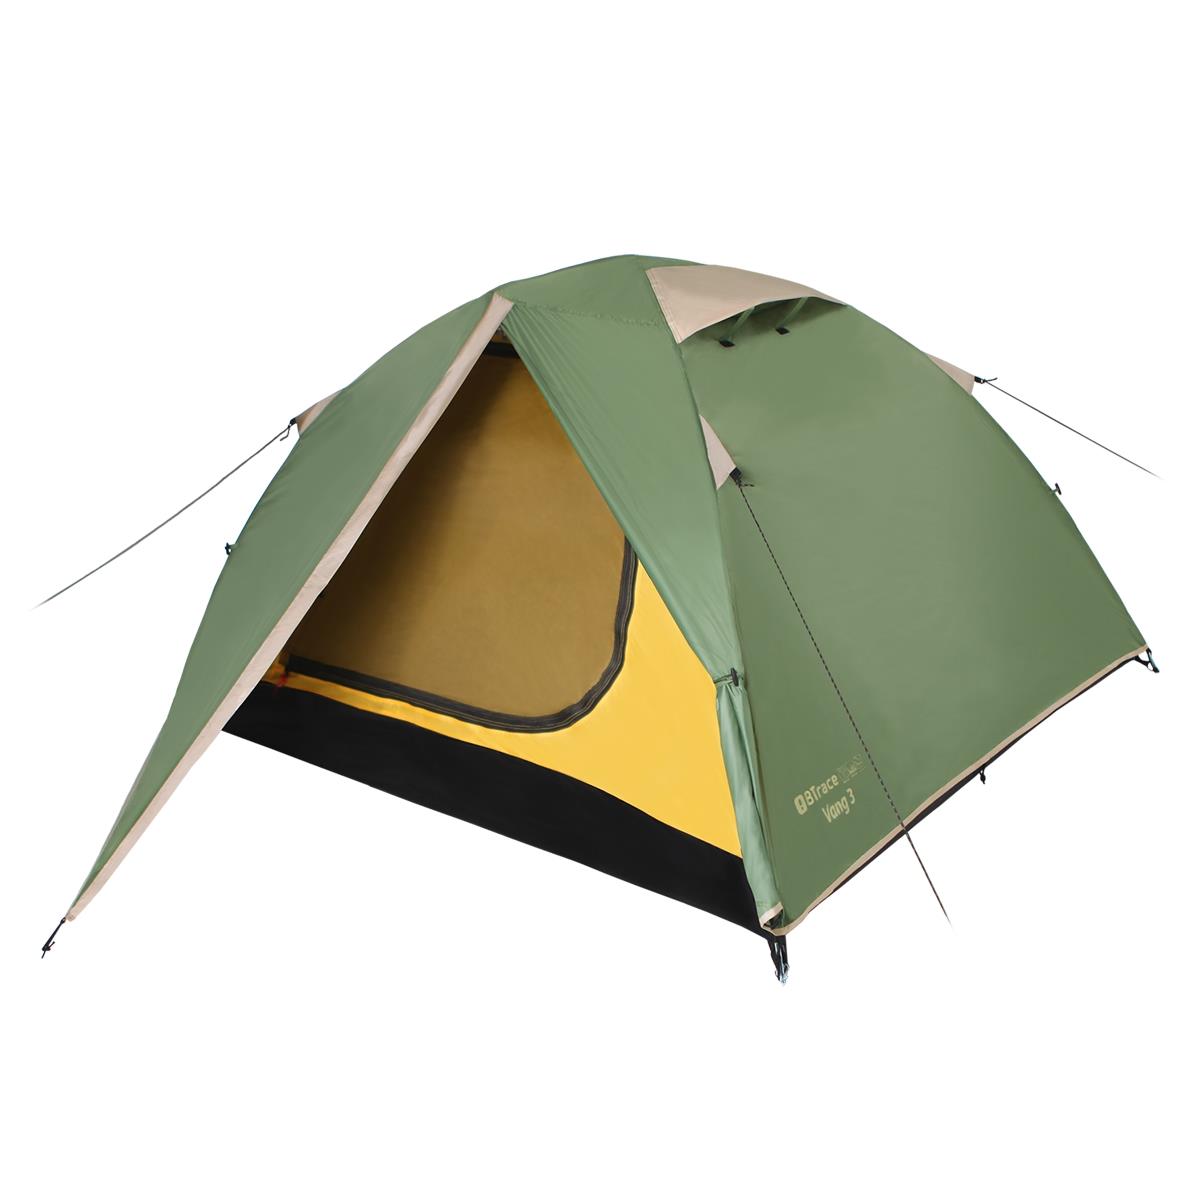 Палатка Vang 3 Зеленый/Бежевый (T0480) BTrace палатка dome 3 btrace